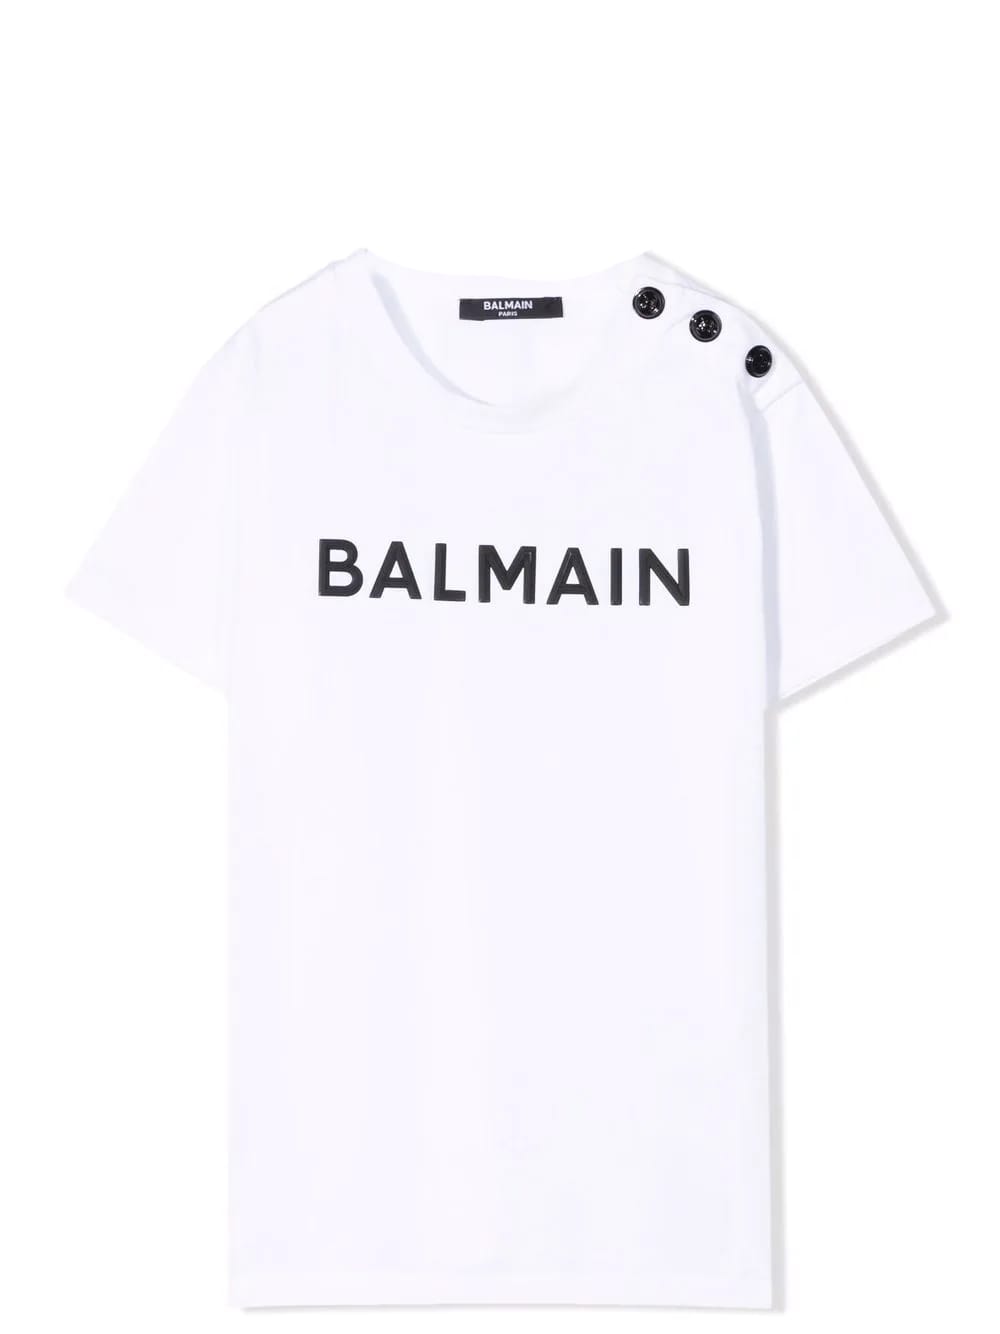 Balmain T-shirt With Print